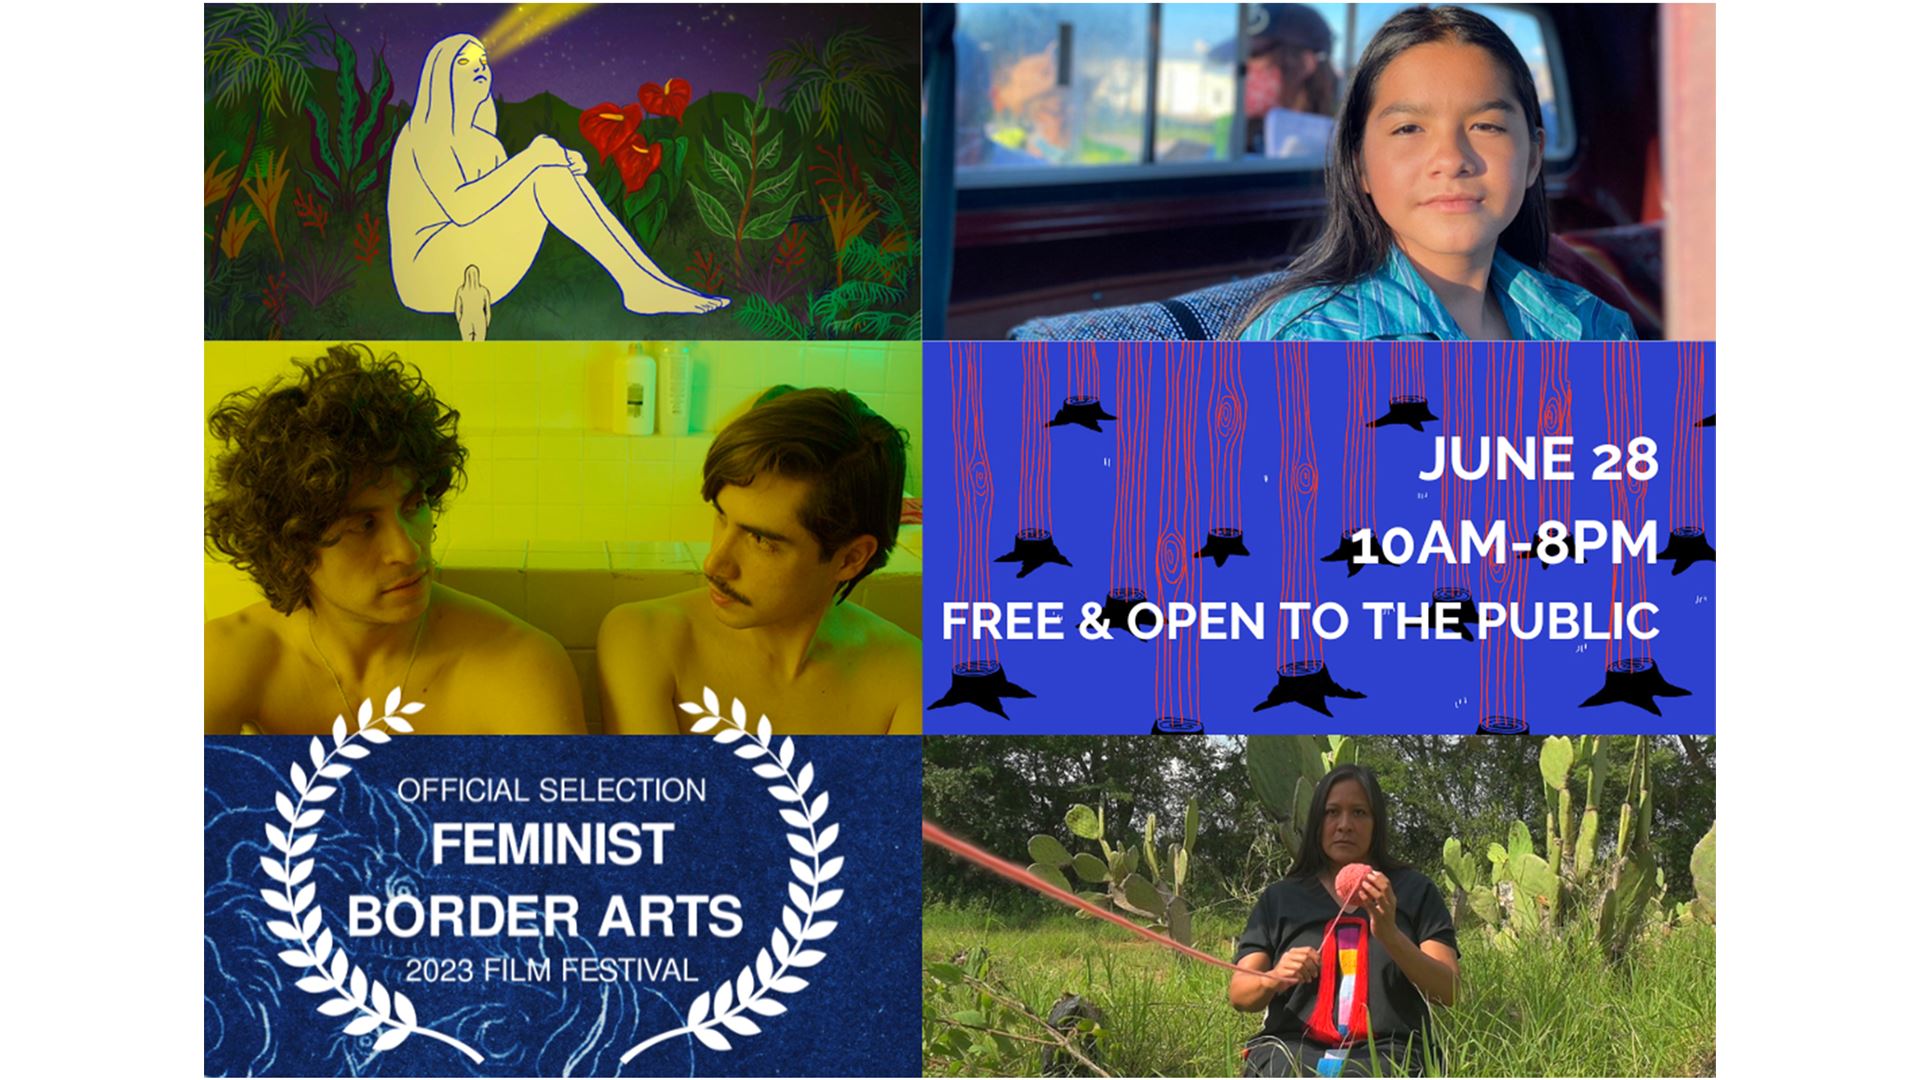 NMSU Feminist Border Arts Film Festival returns in person this summer